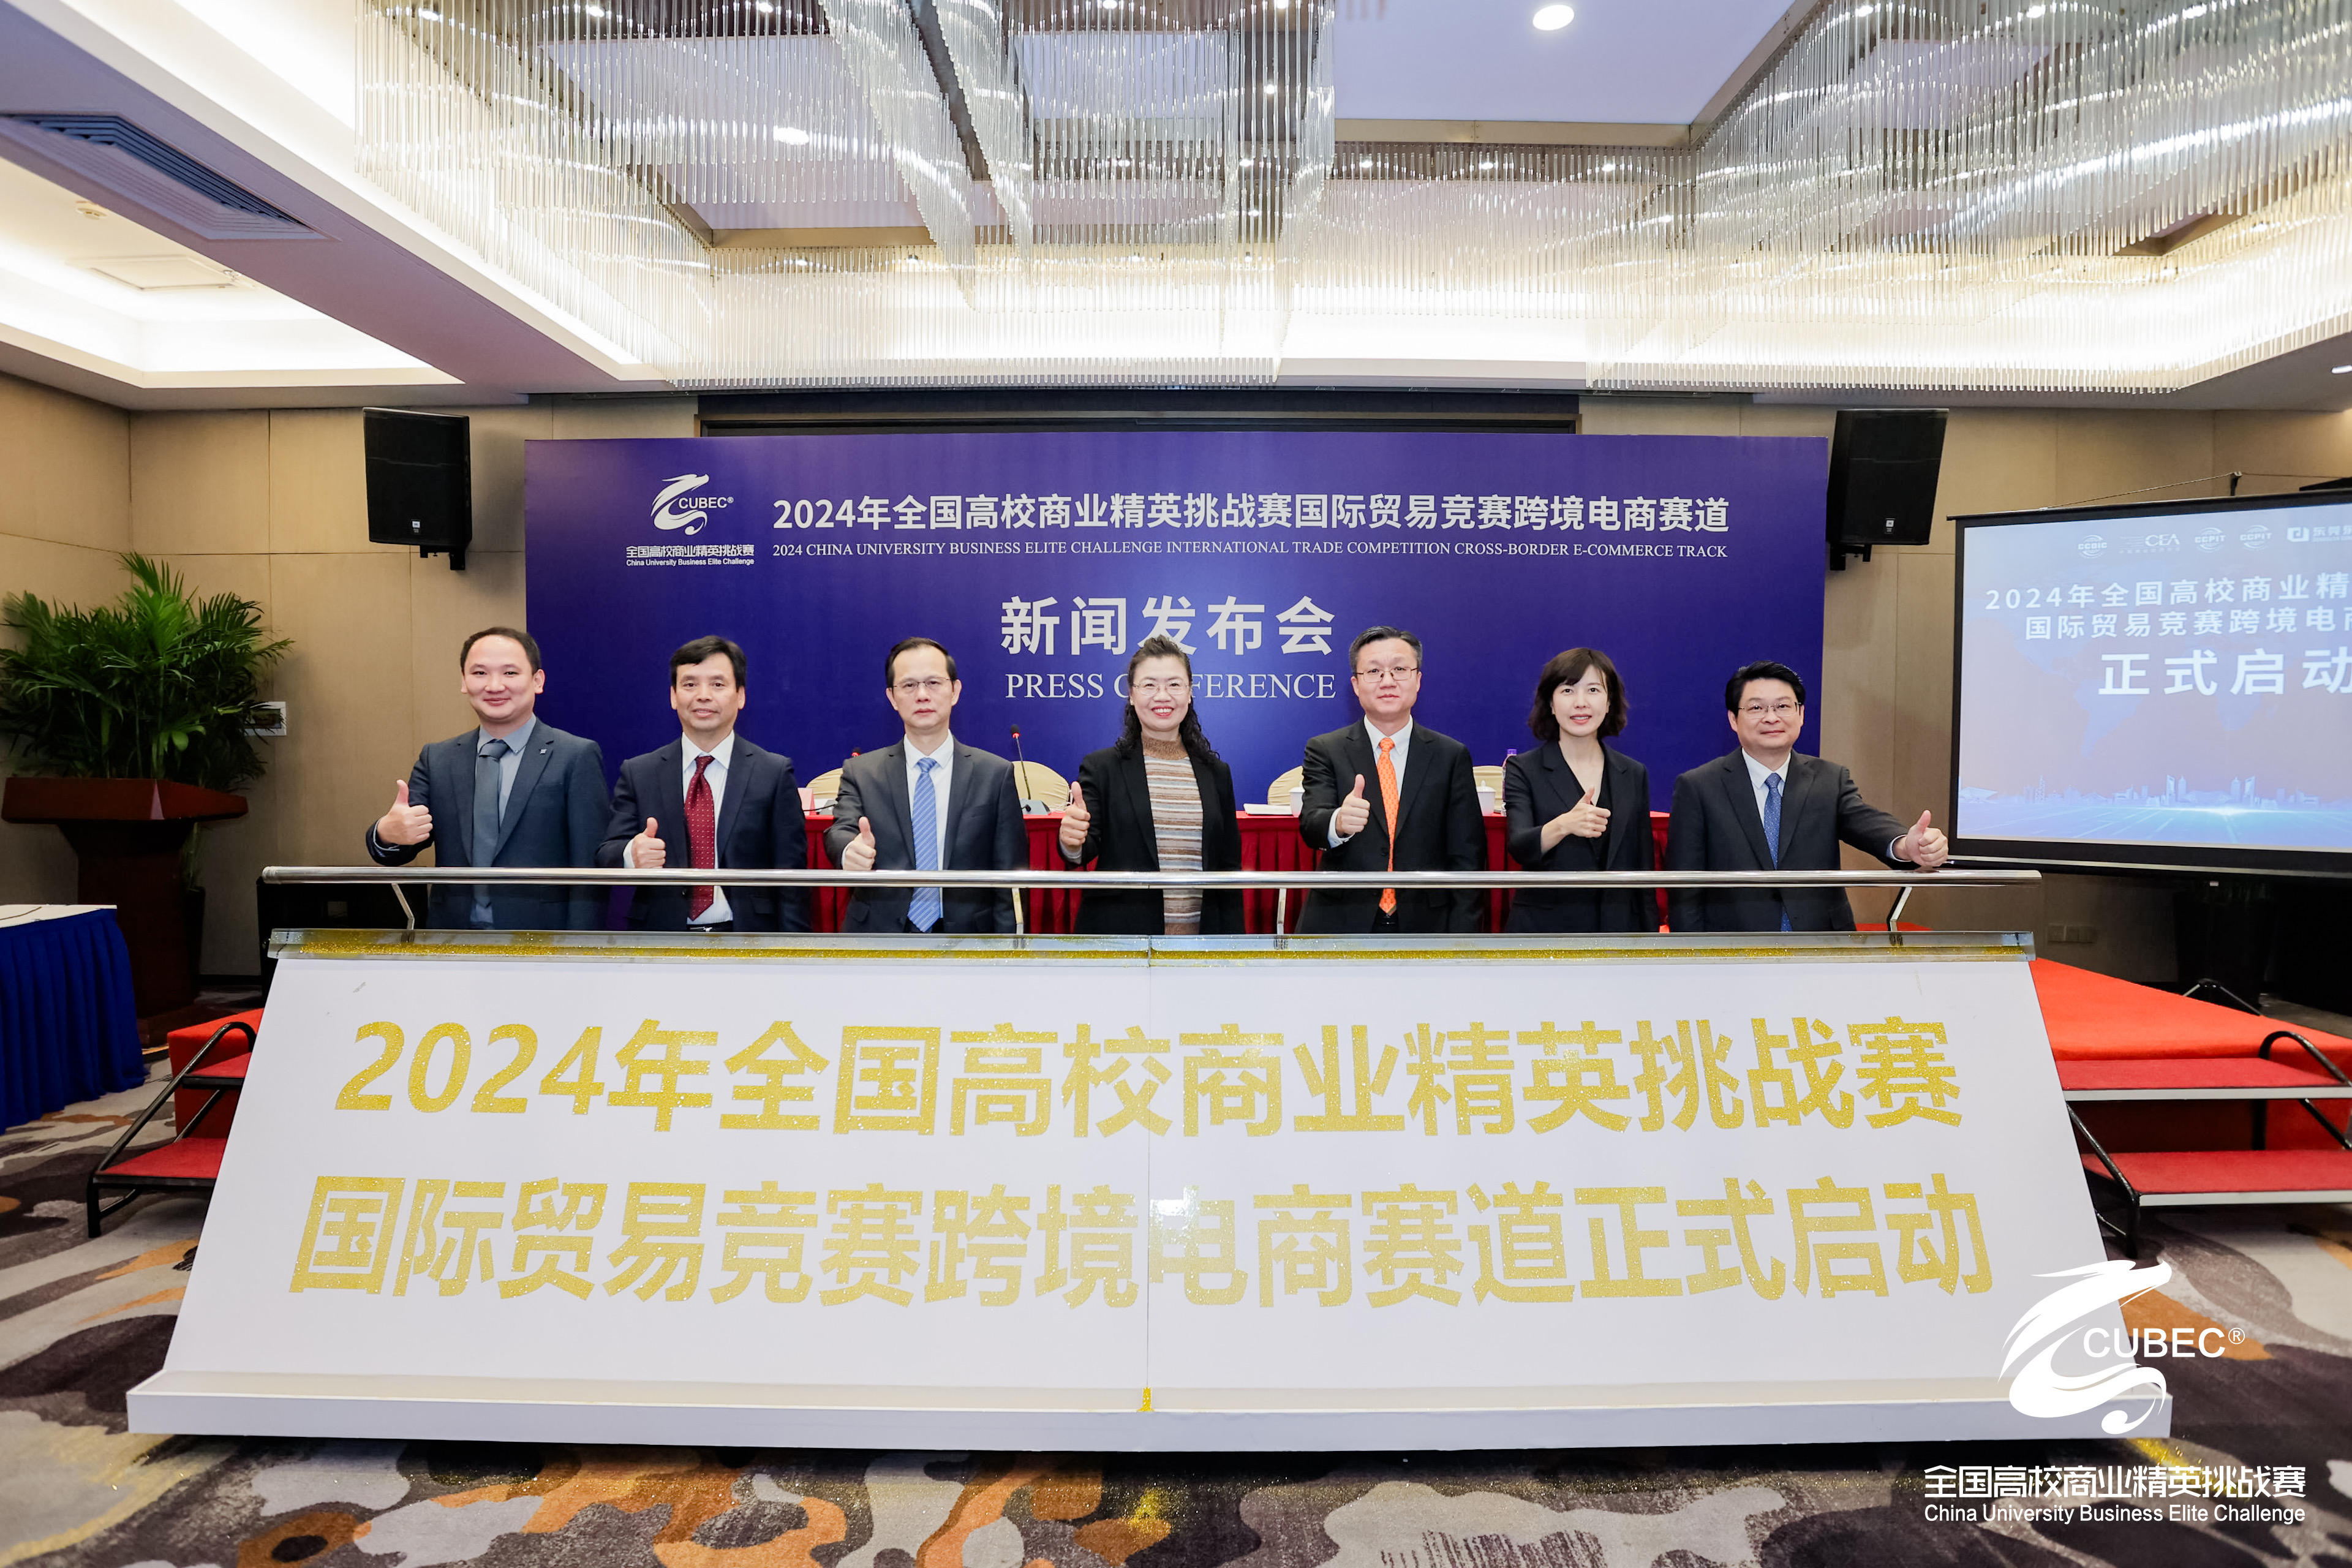 2024年邦际商业竞赛跨境电商赛道音讯宣布会召开